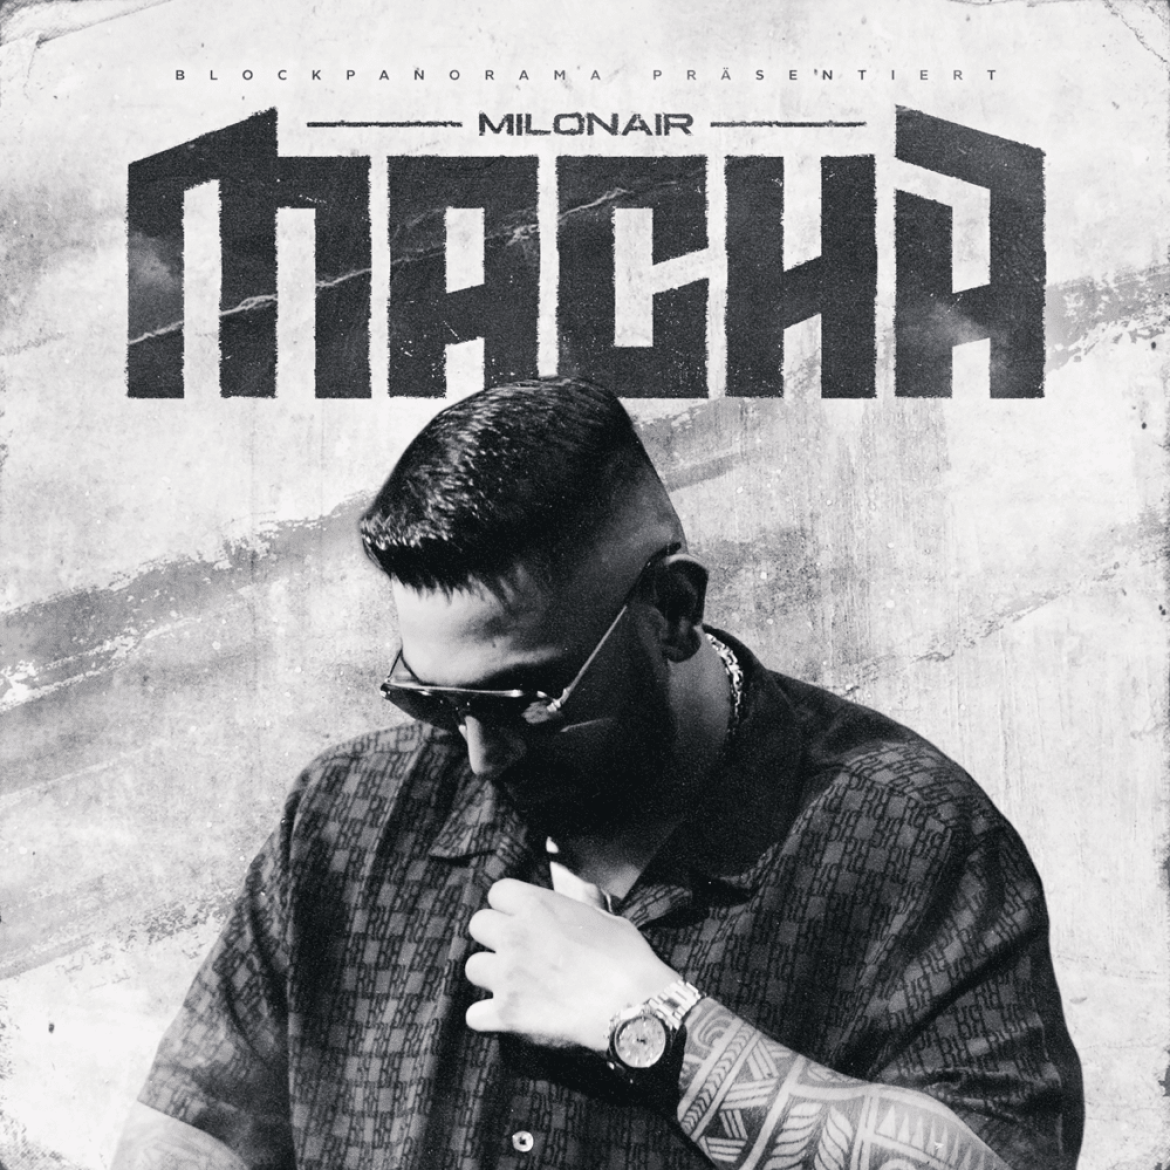 Cover von Milonair's Album "Macha"